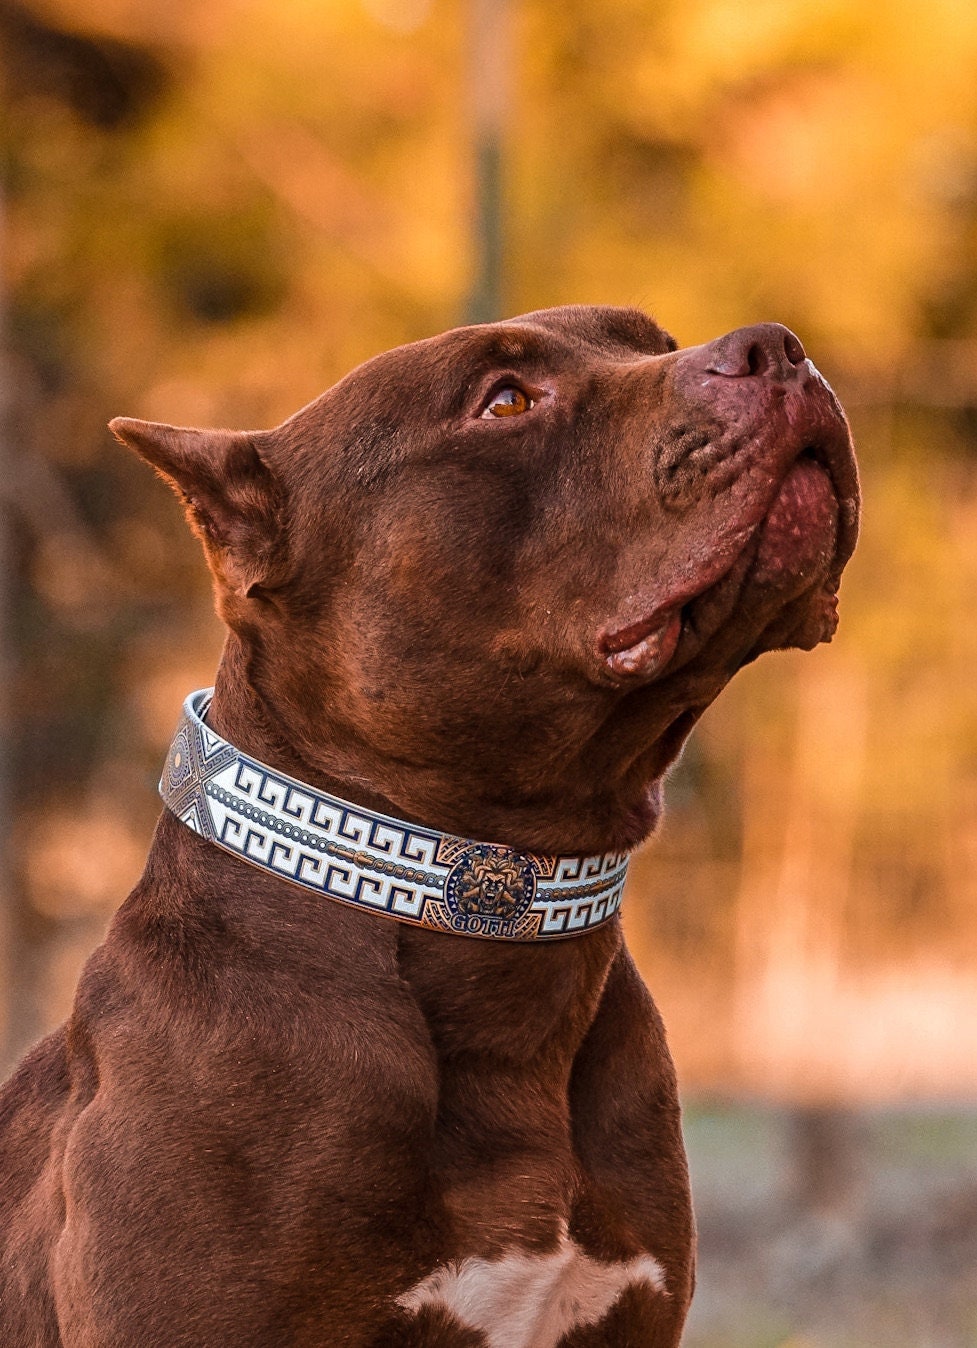 6 Designer Dog Collars — Designer Dog Collars Gucci Dog Collars Louis  Vuitton Dog Collars